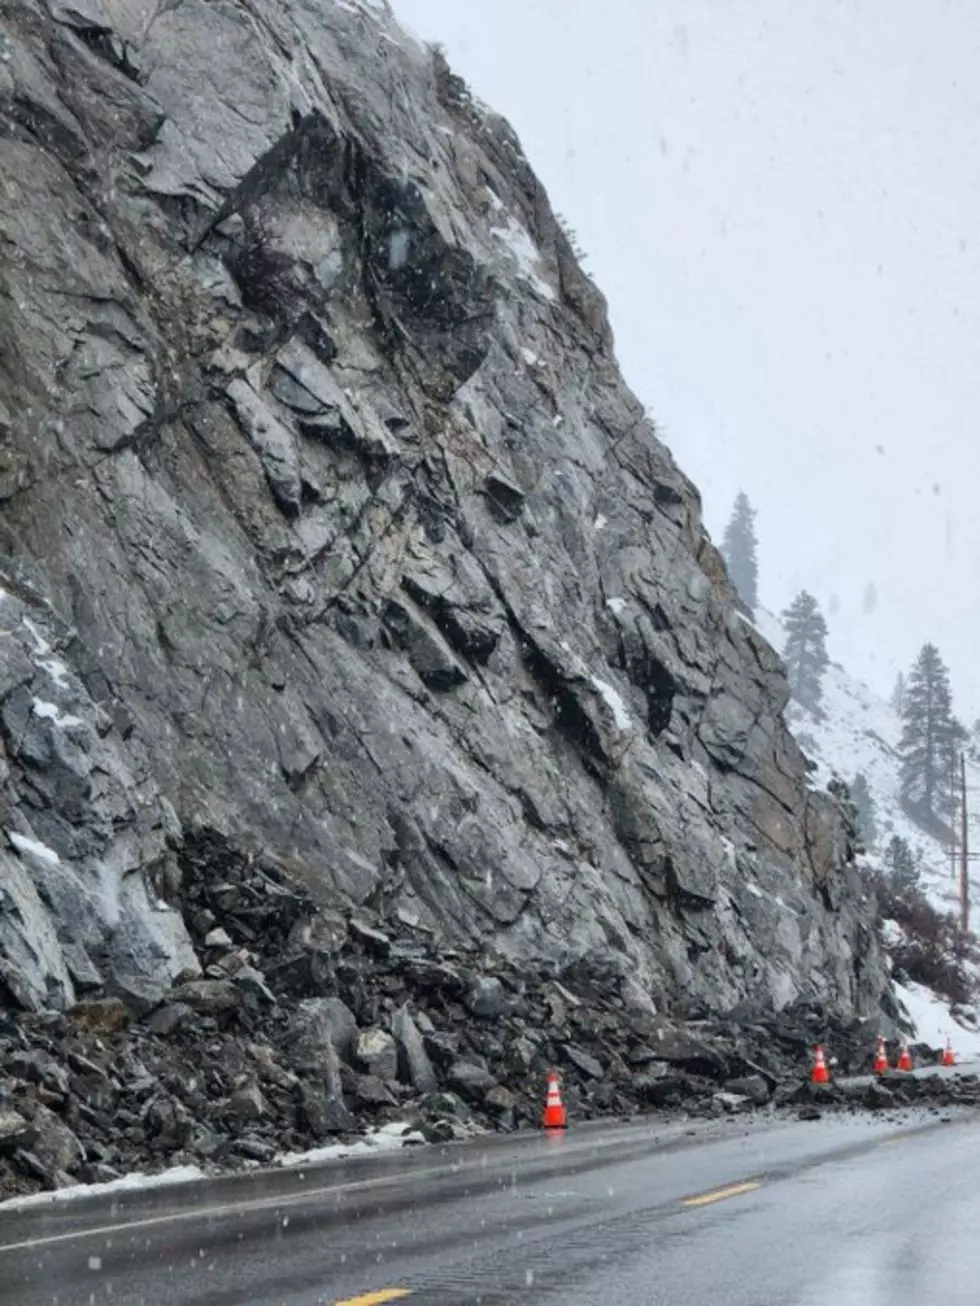 Traffic Delays for Rockslide Work